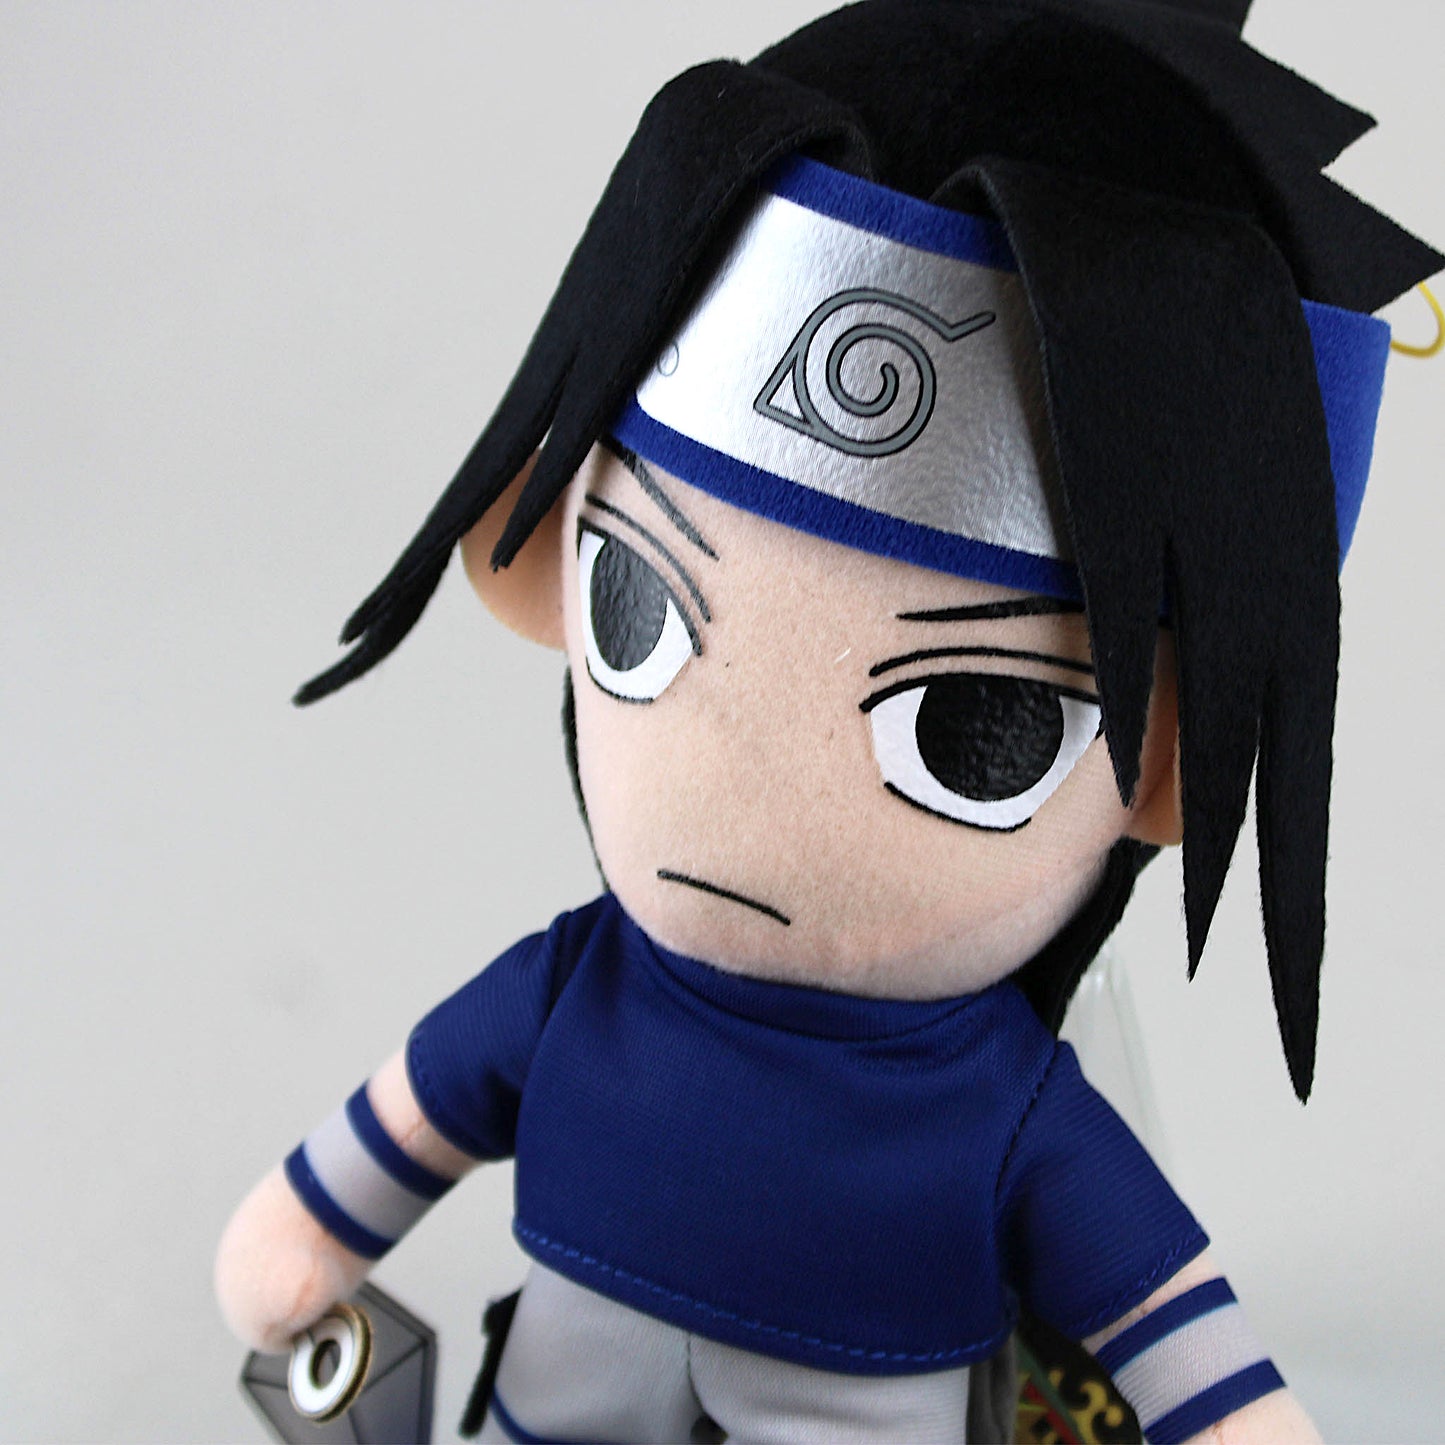 Sasuke Uchiha (Naruto) Plush